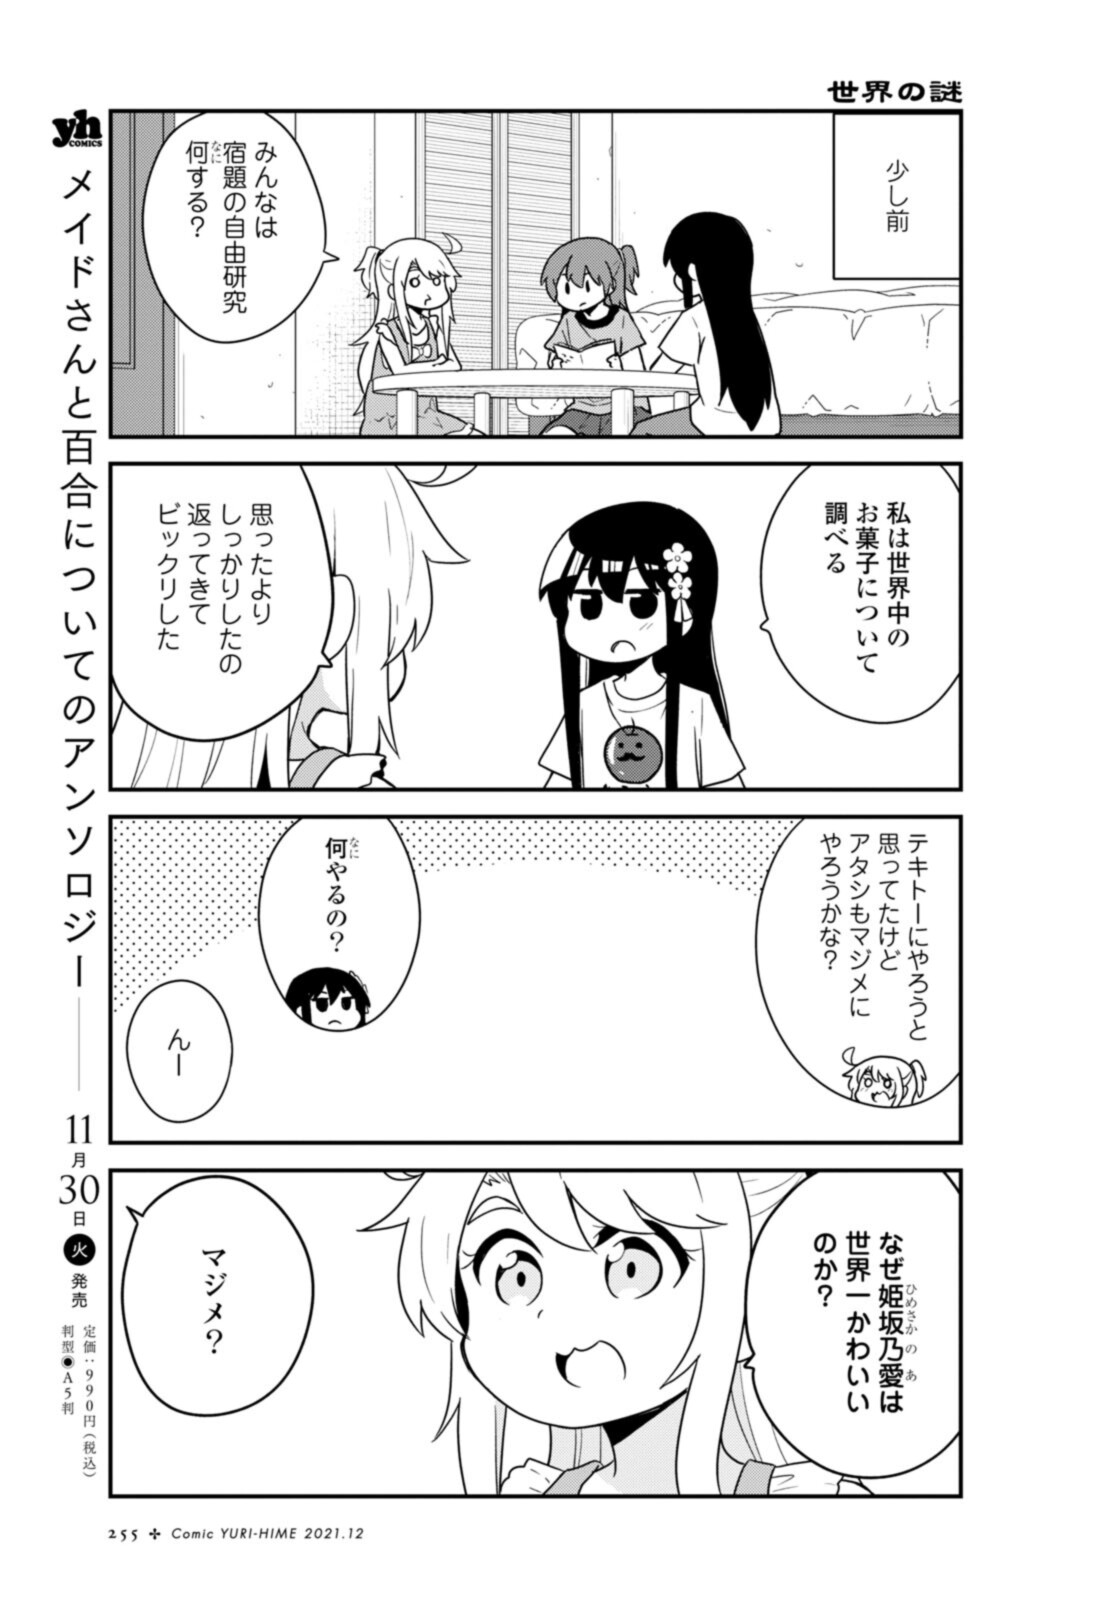 Watashi ni Tenshi ga Maiorita! - Chapter 90 - Page 3